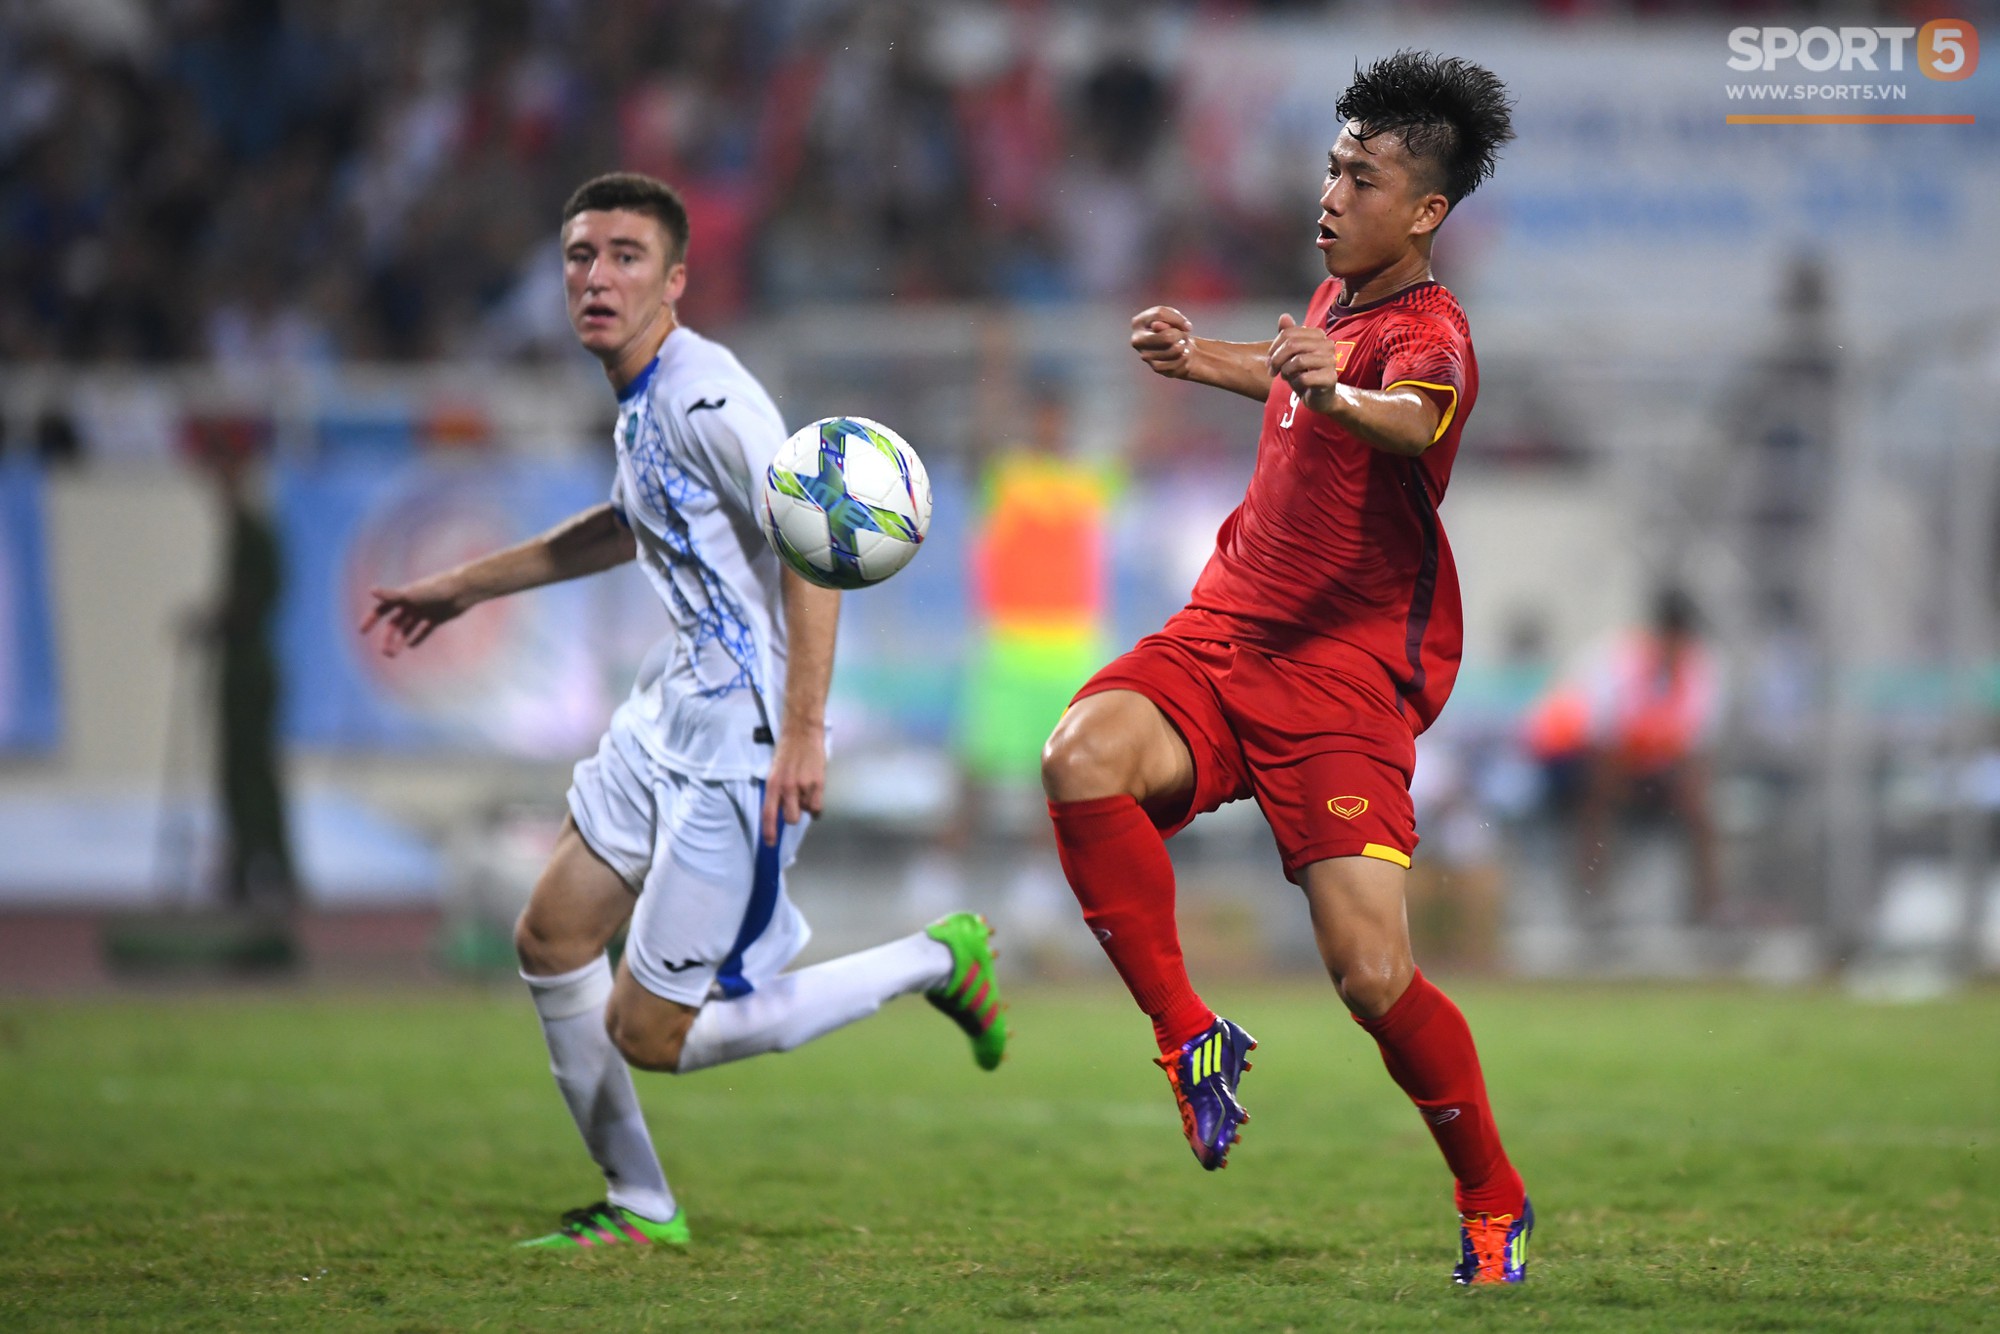 Văn Đức tỏa sáng với 1 pha xử lý đẳng cấp, U23 Việt Nam hòa U23 Uzbekistan trong trận đấu cuối cùng - Ảnh 2.